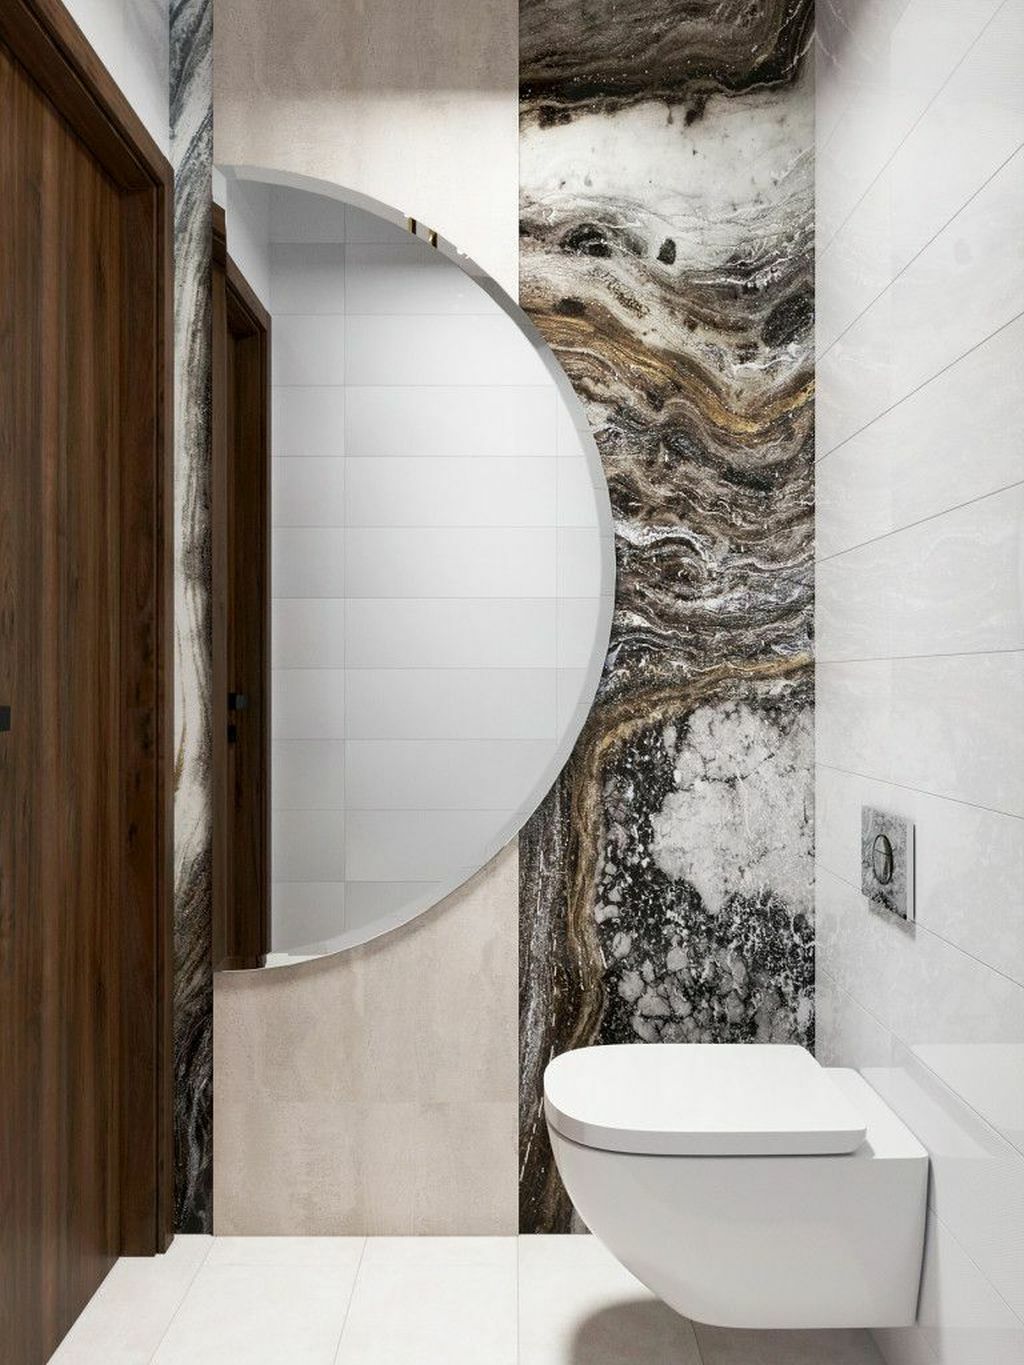 Nagy félkör alakú tükör a wc-ben a kőmintás falburkolat előtt